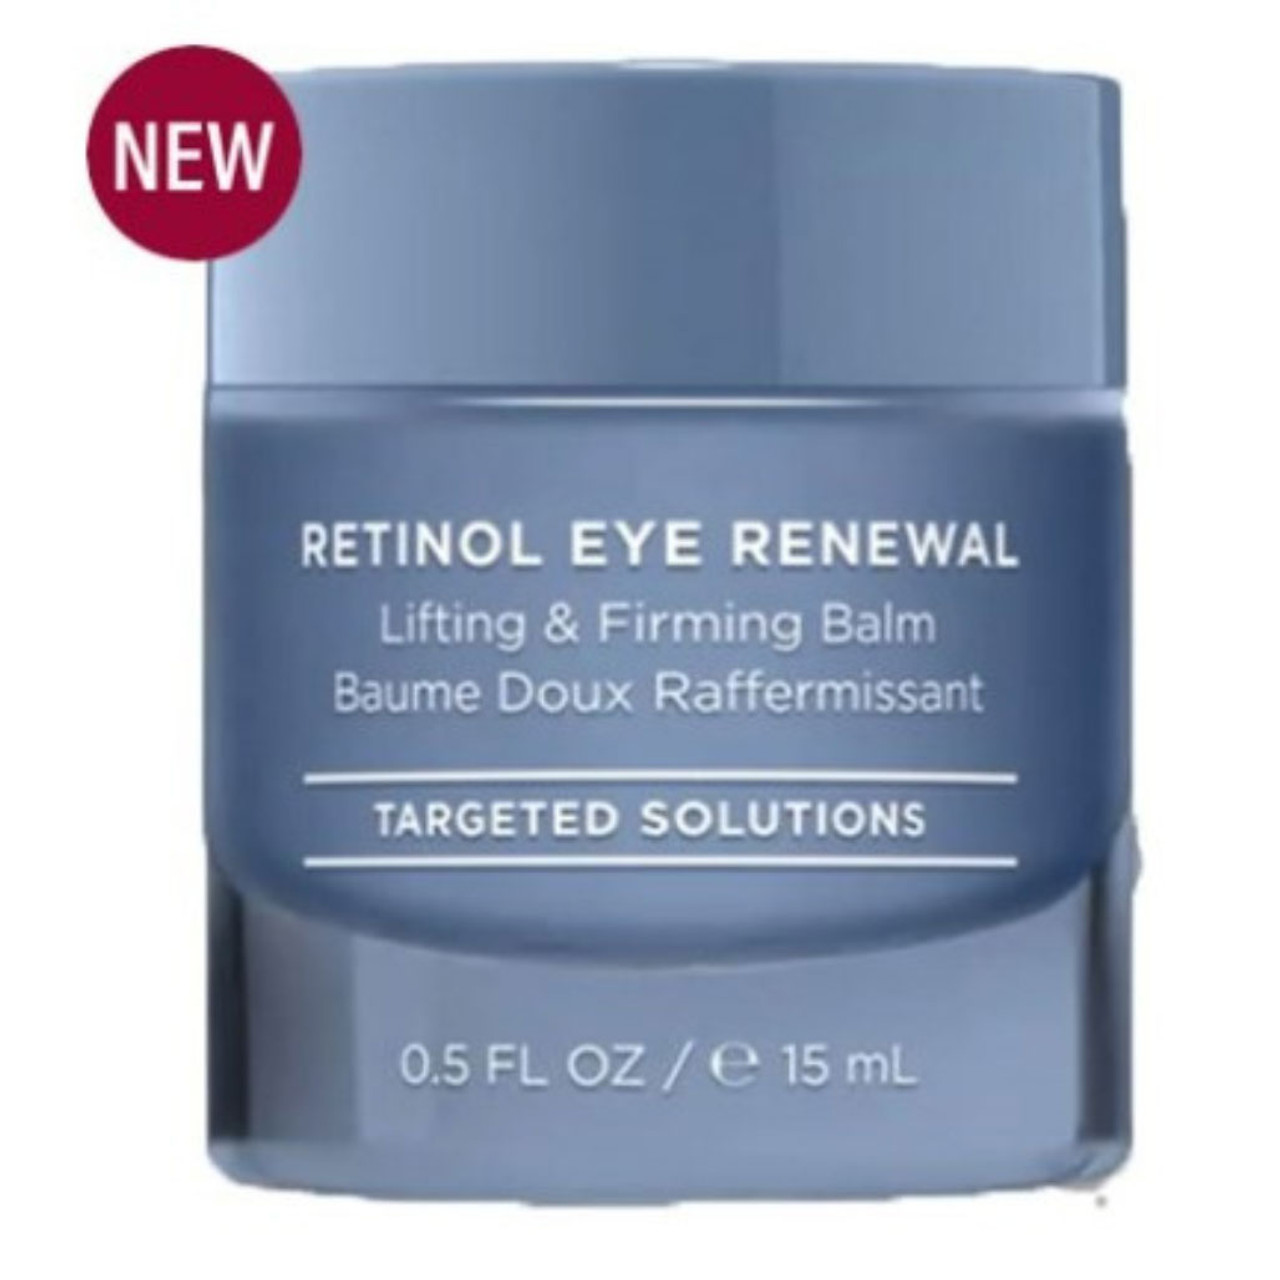 HydroPeptide Retinol Eye Renewal